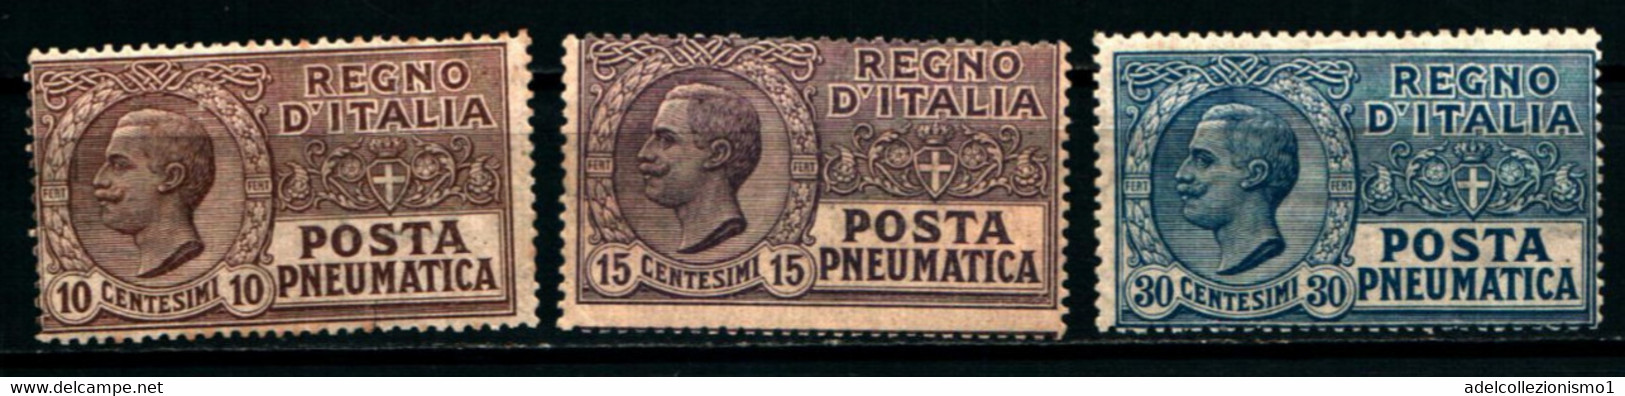 40174) ITALIA-Pneumatica Tipo Leoni - POSTA PNEUMATICA - 1913/1923 SERIE COMPLETA- MLH* - Rohrpost